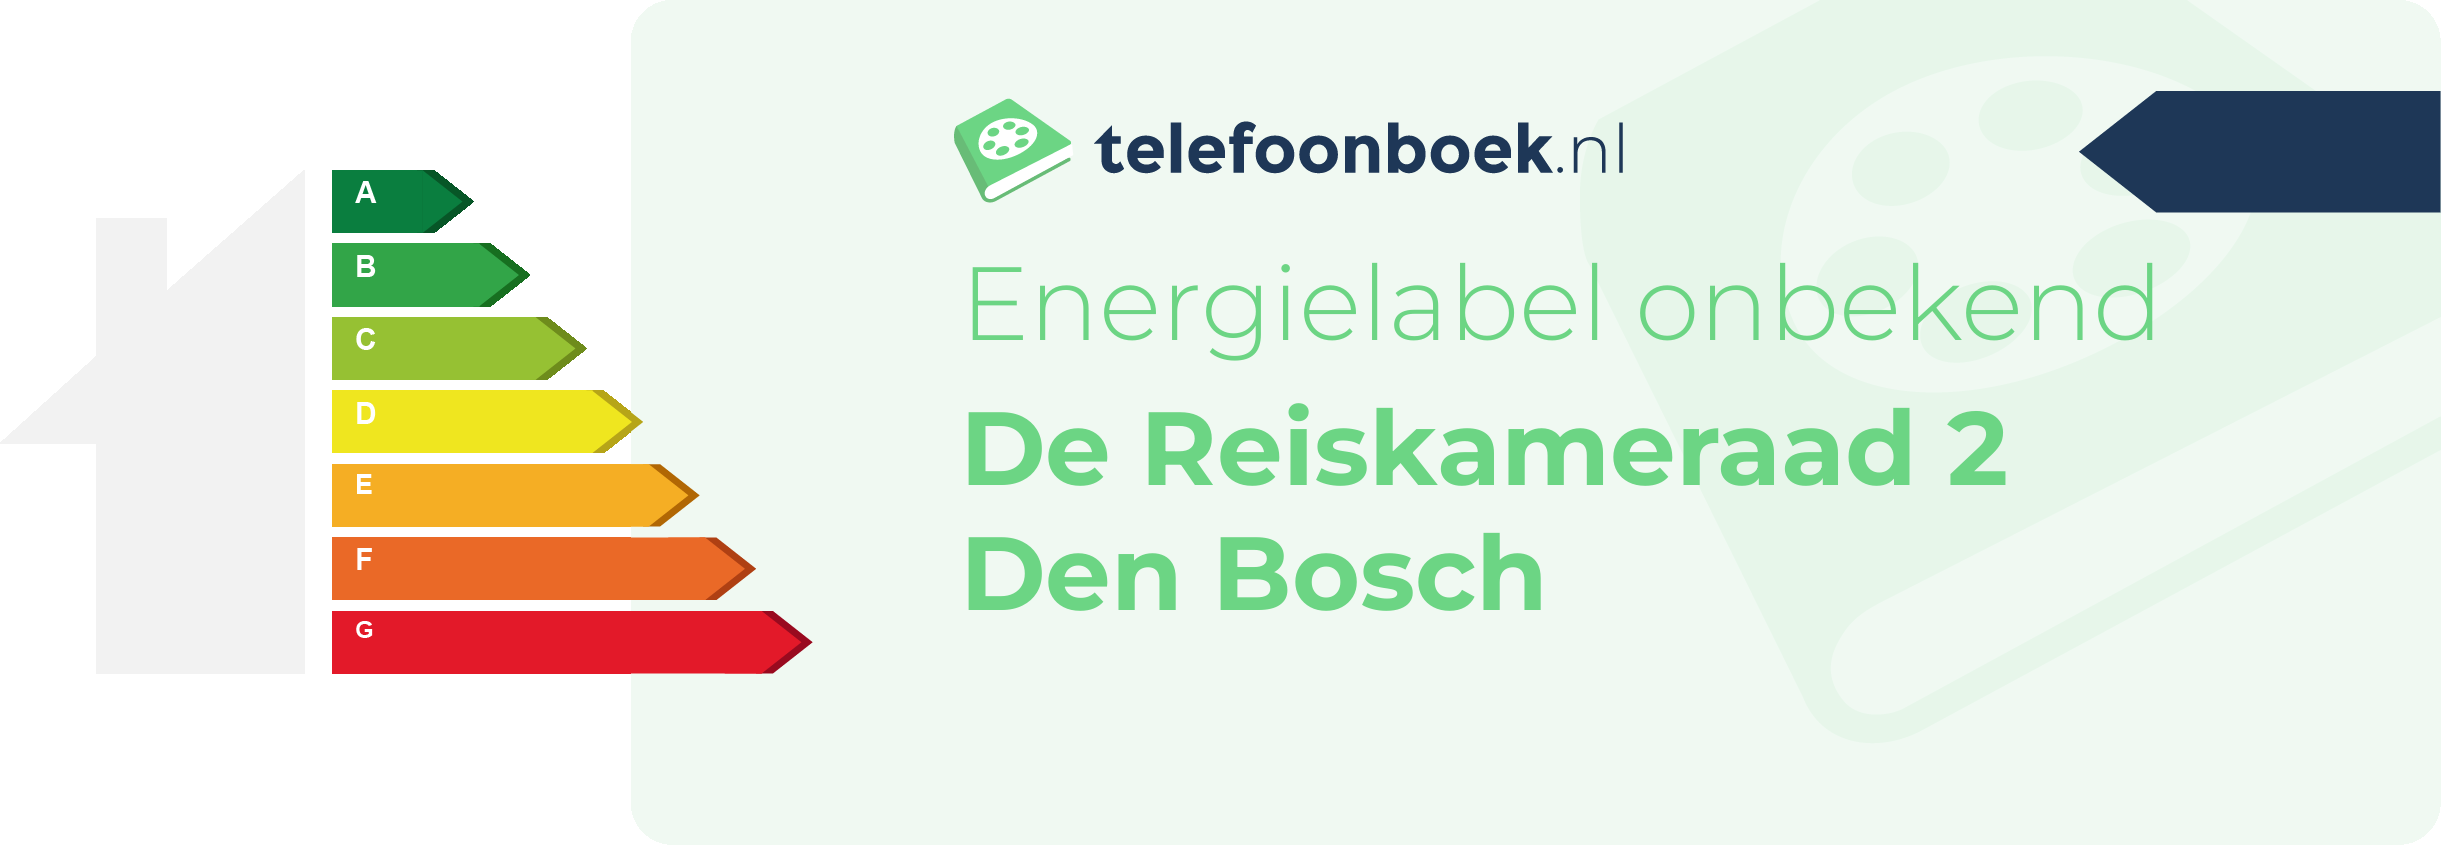 Energielabel De Reiskameraad 2 Den Bosch